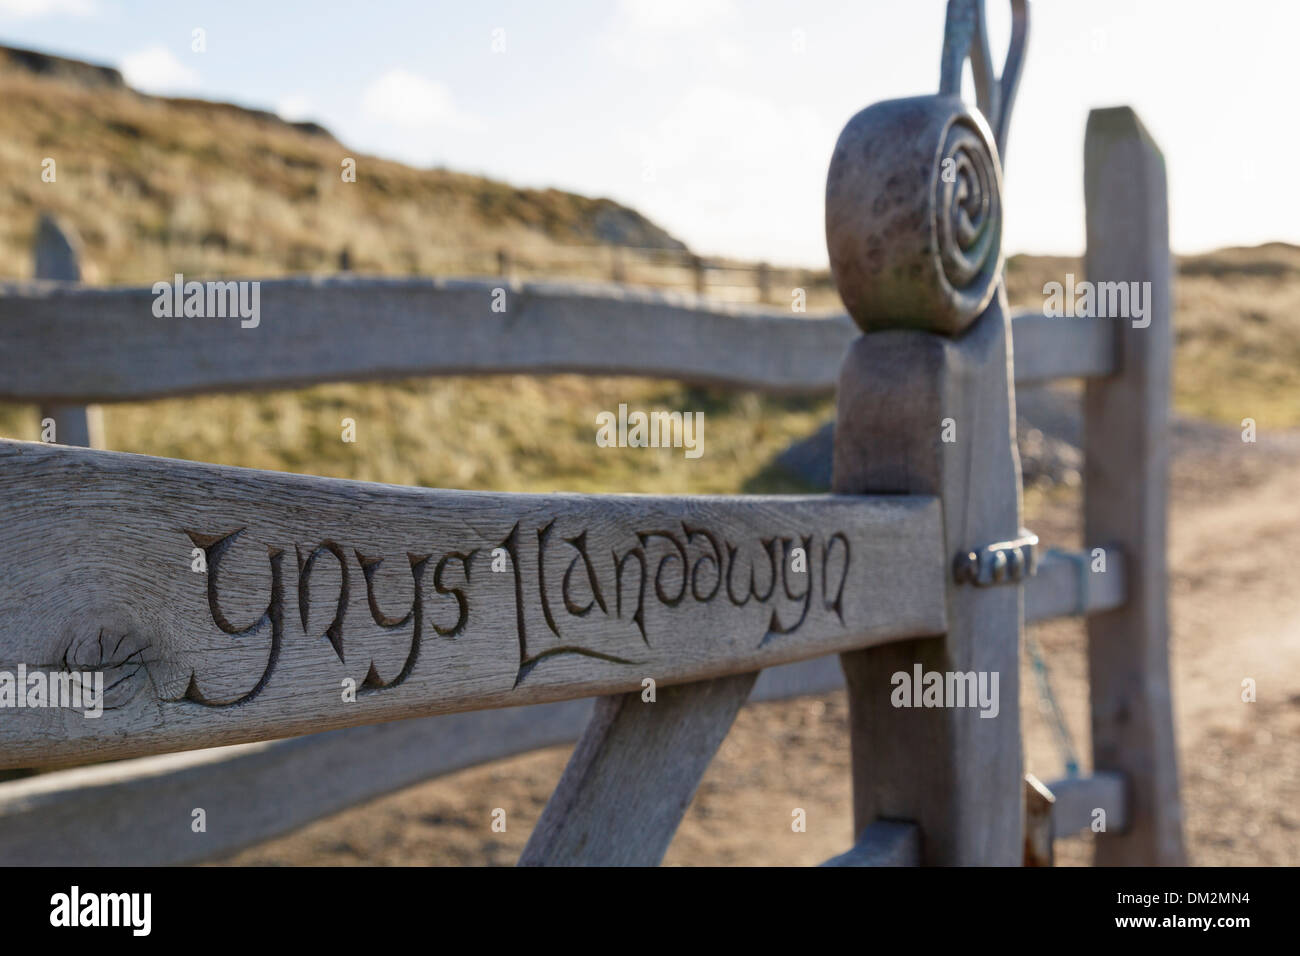 Sculptures celtiques et l'inscription du nom sur kissing gate sur la voie principale à l'île de Anglesey Ynys Llanddwyn Newborough North Wales UK Banque D'Images